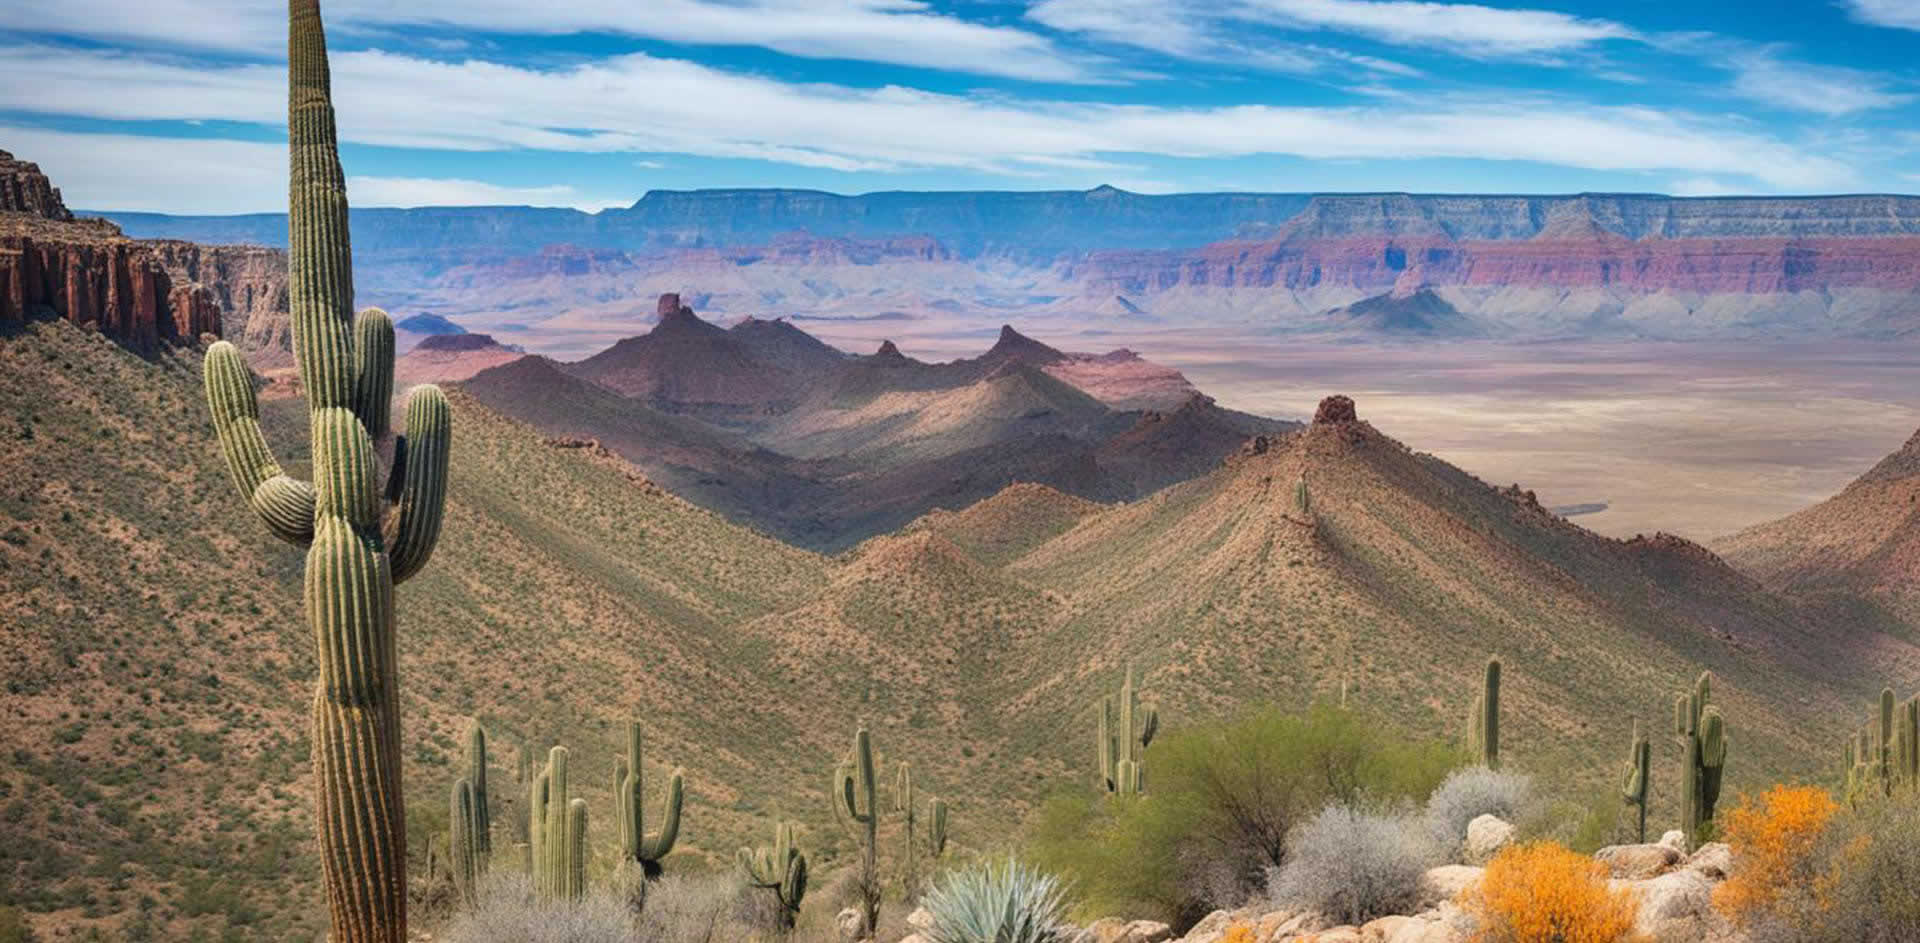 Grand Canyon Tours from Phoenix Arizona